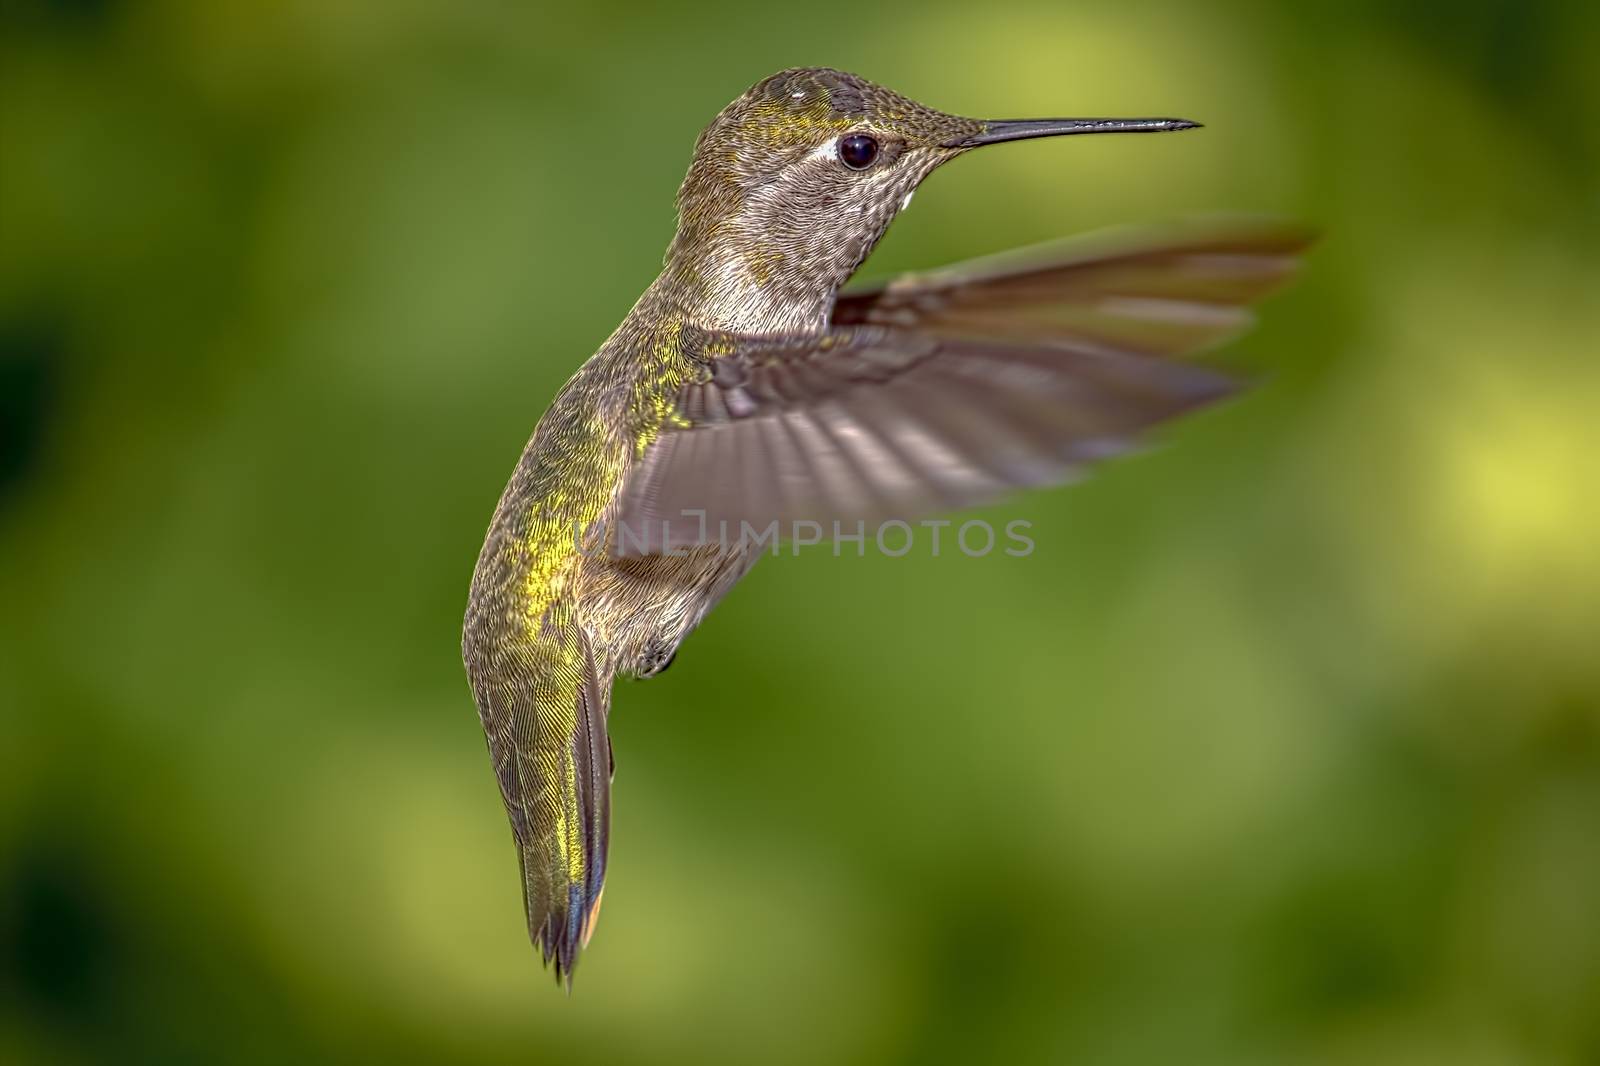 Close up on a hummingbird in flight.